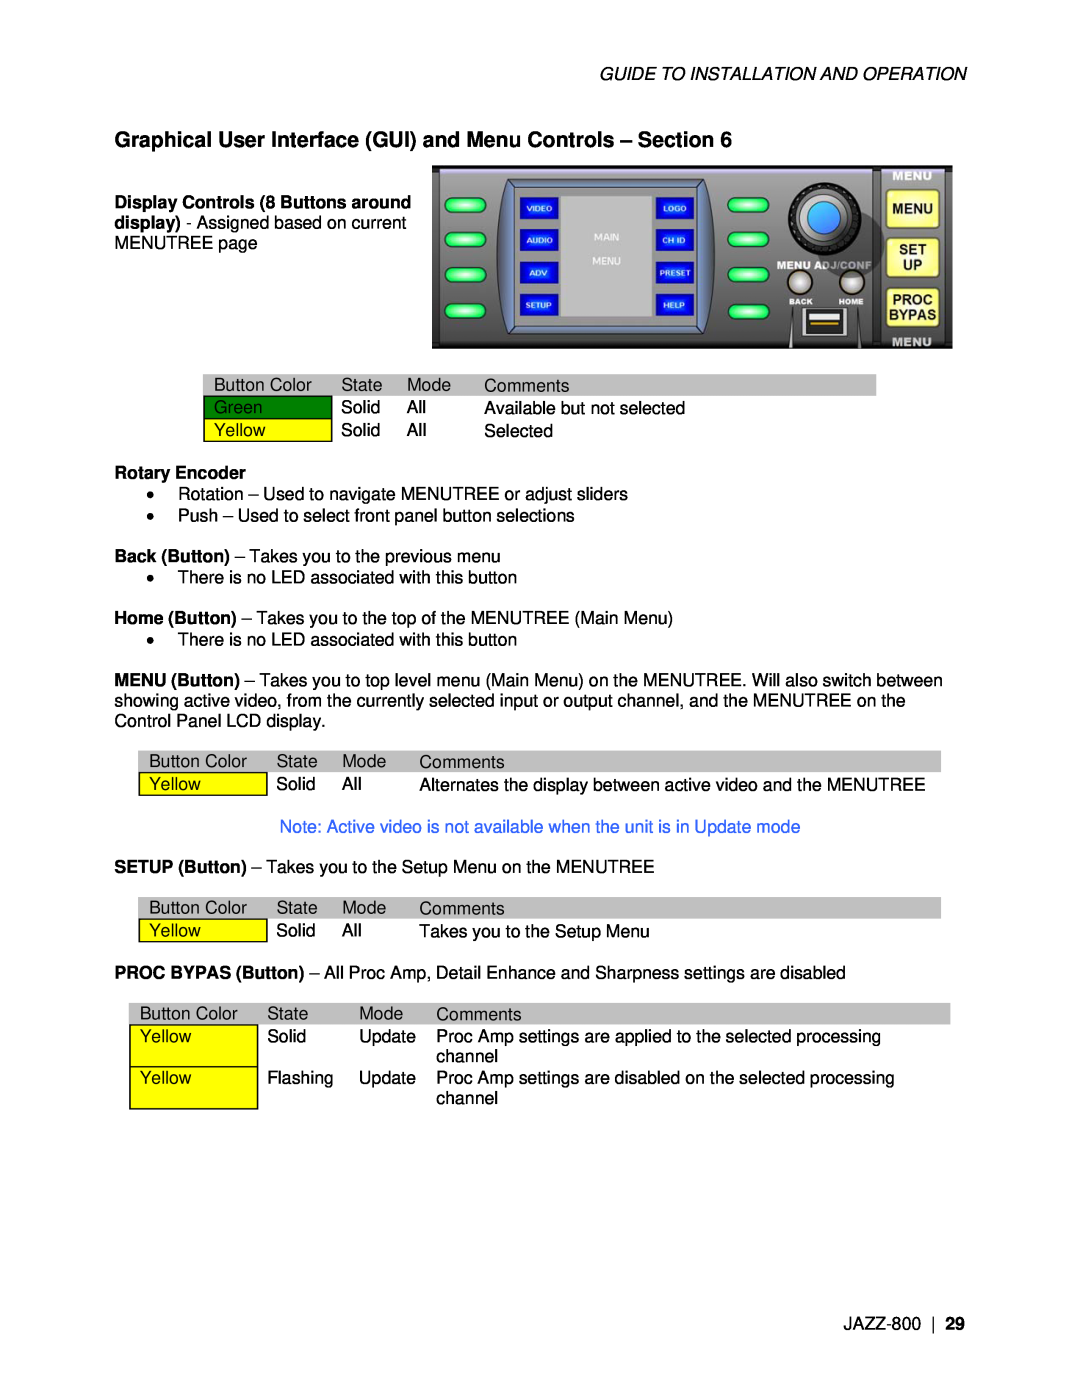 Miranda Camera Co JAZZ-800 manual Rotary Encoder 